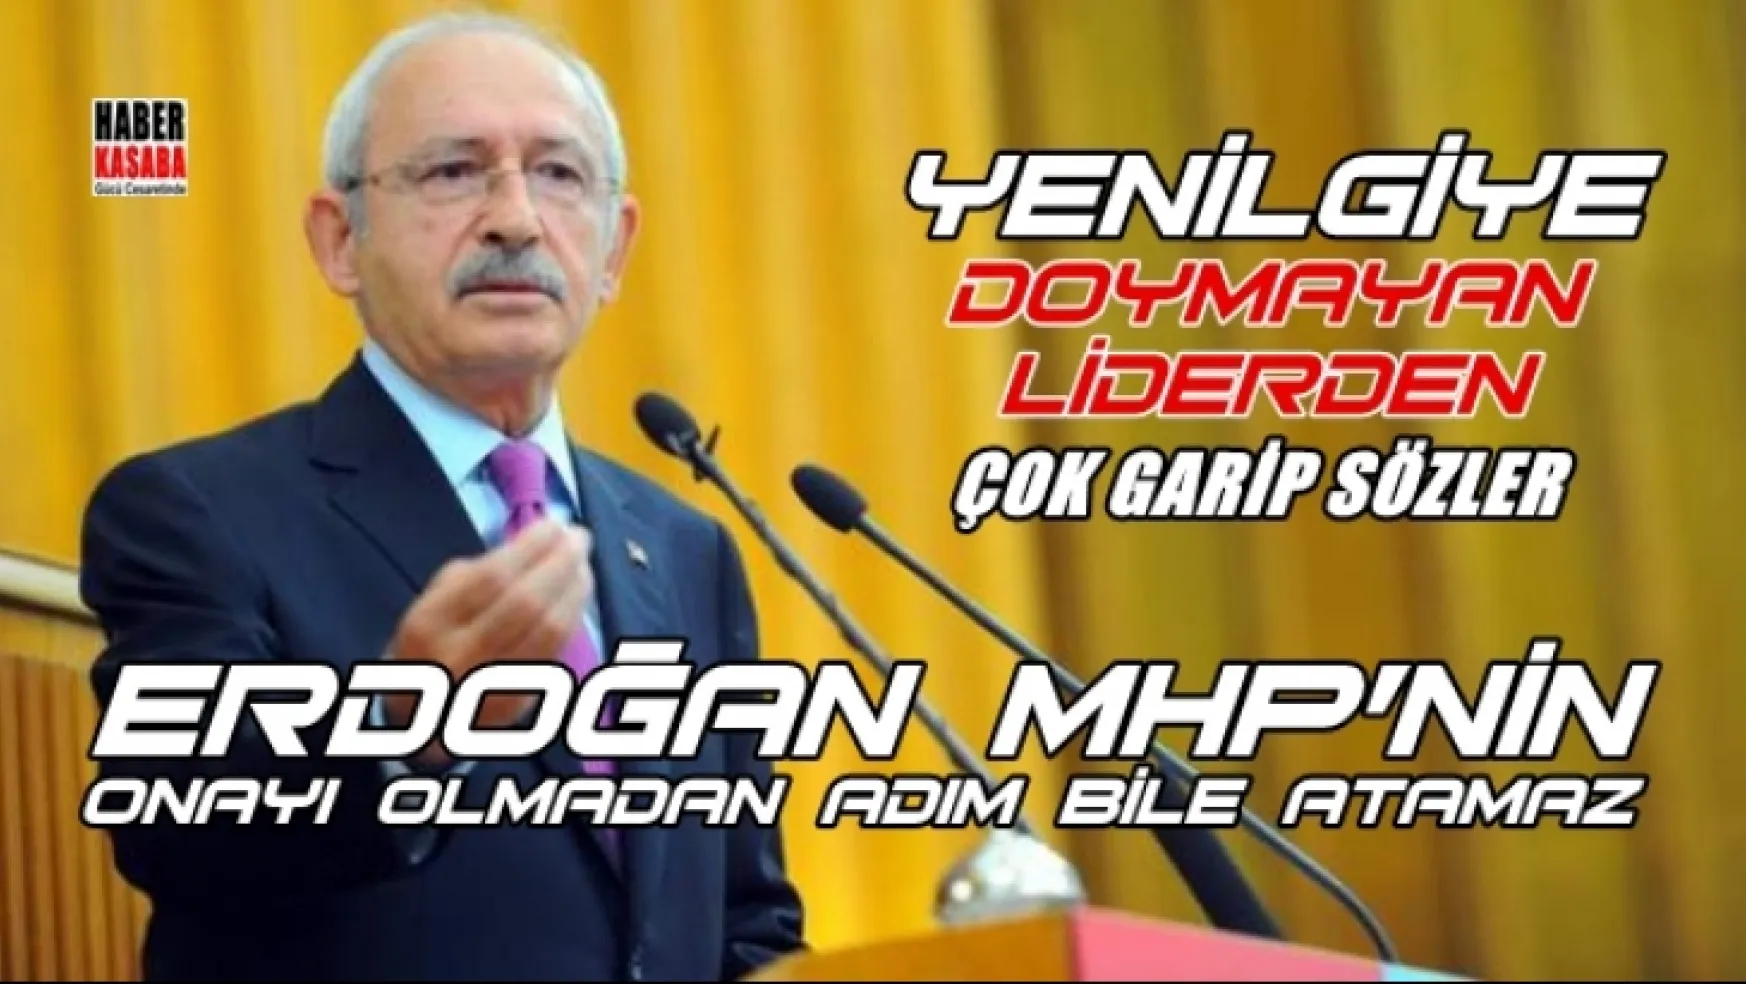 Erdoğan, MHP'nin onayı olmadan adım bile atamaz